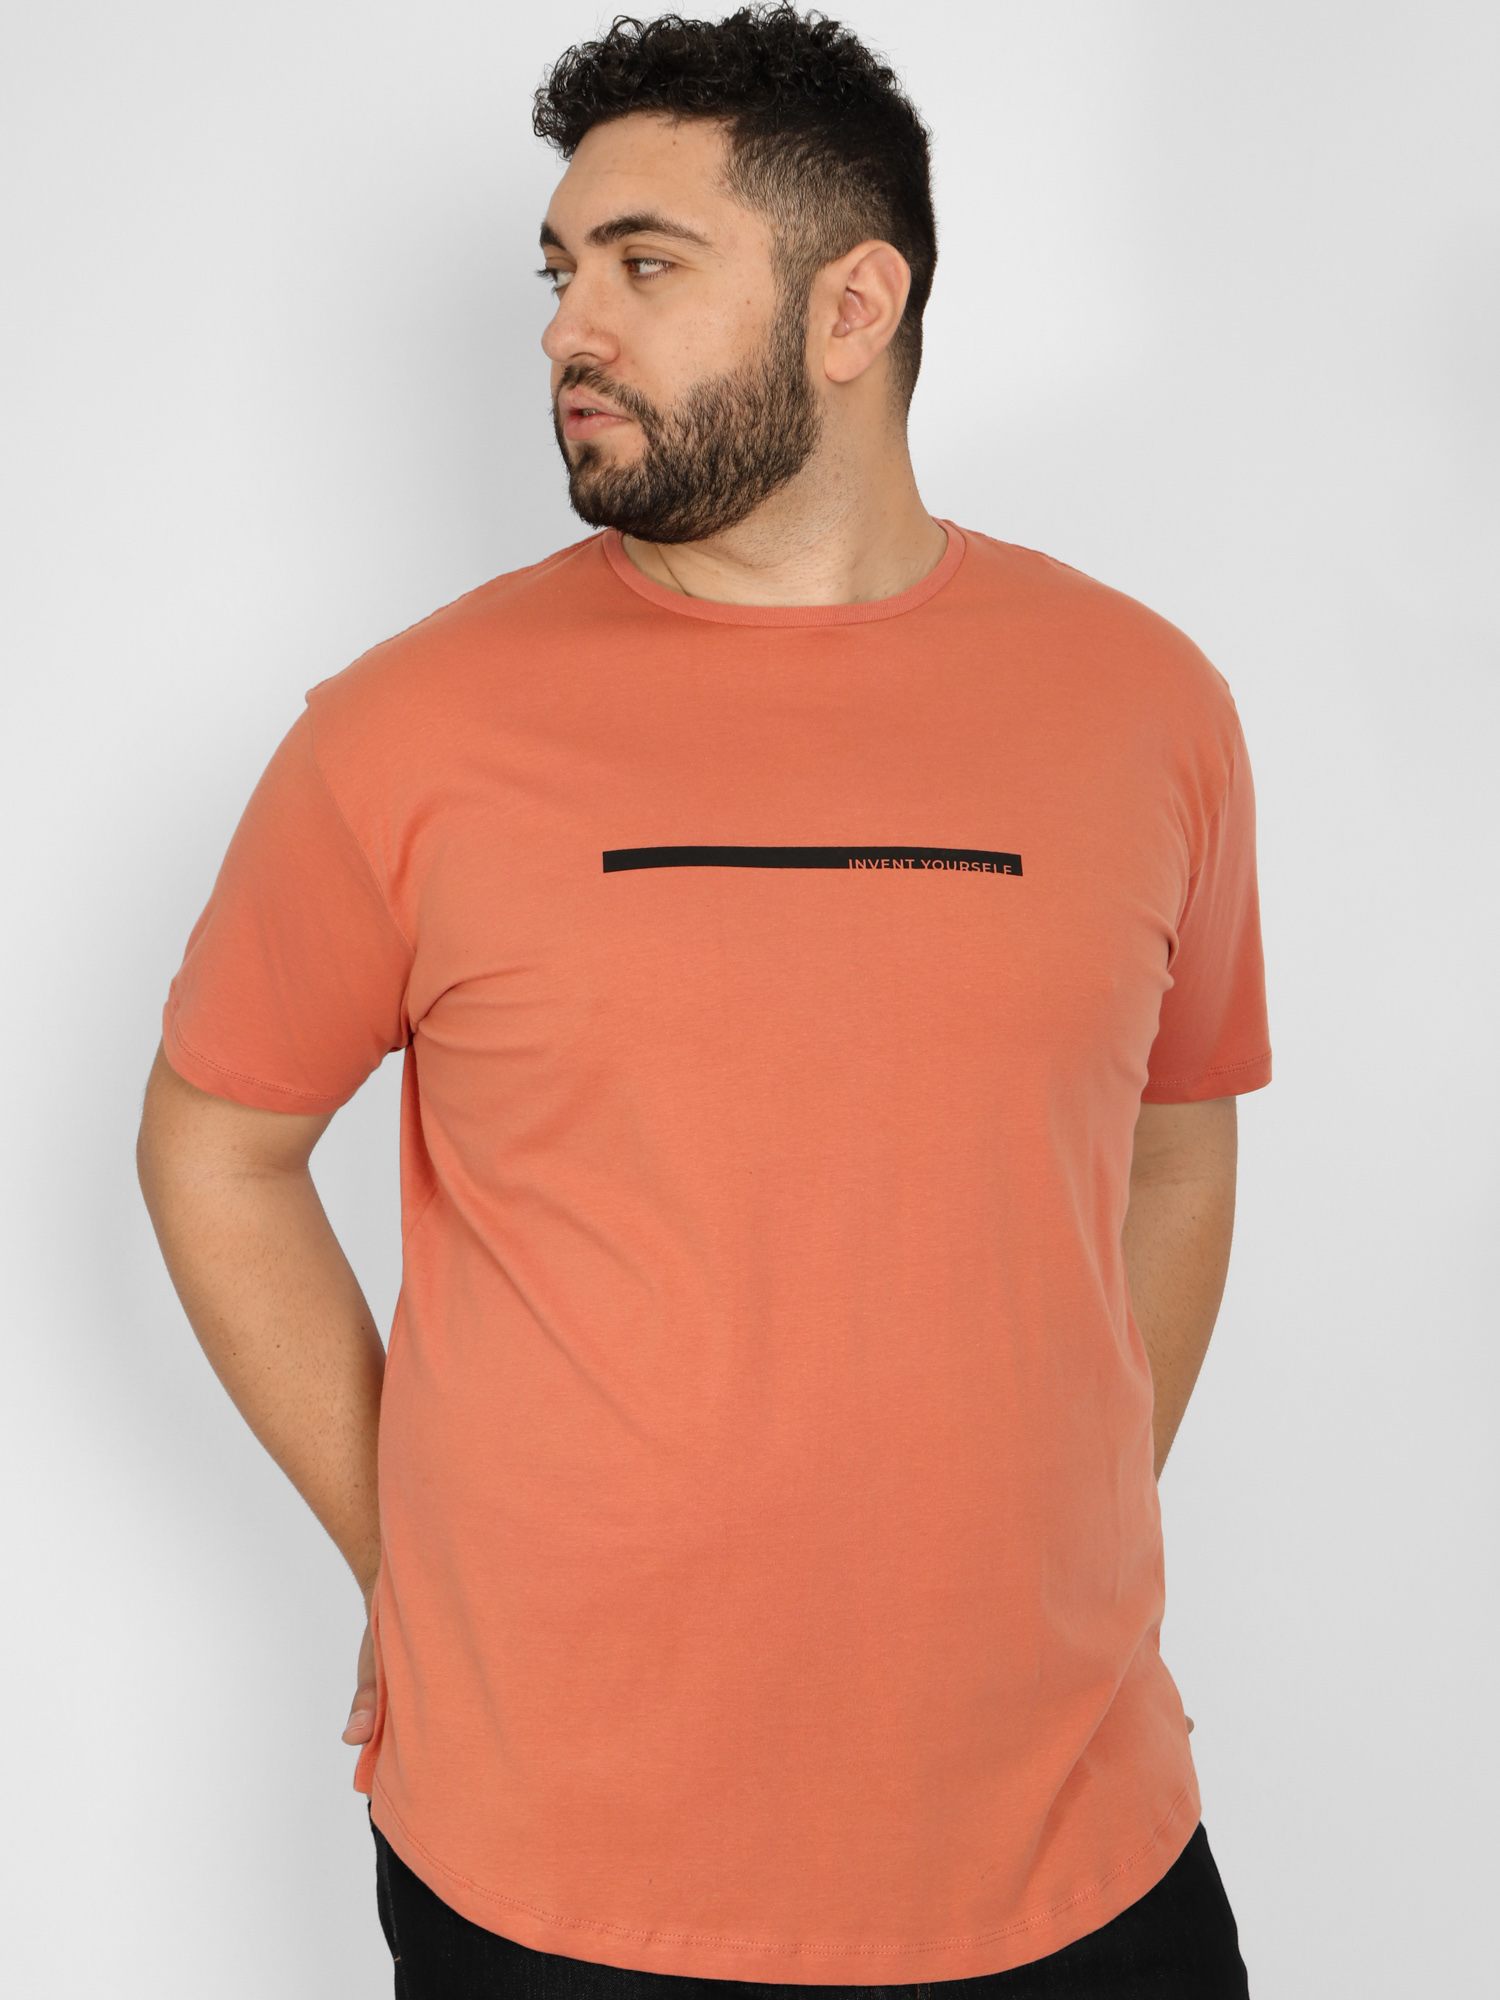 Ανδρική Μπλούζα Μακό Double Plus Size - Πορτοκαλί